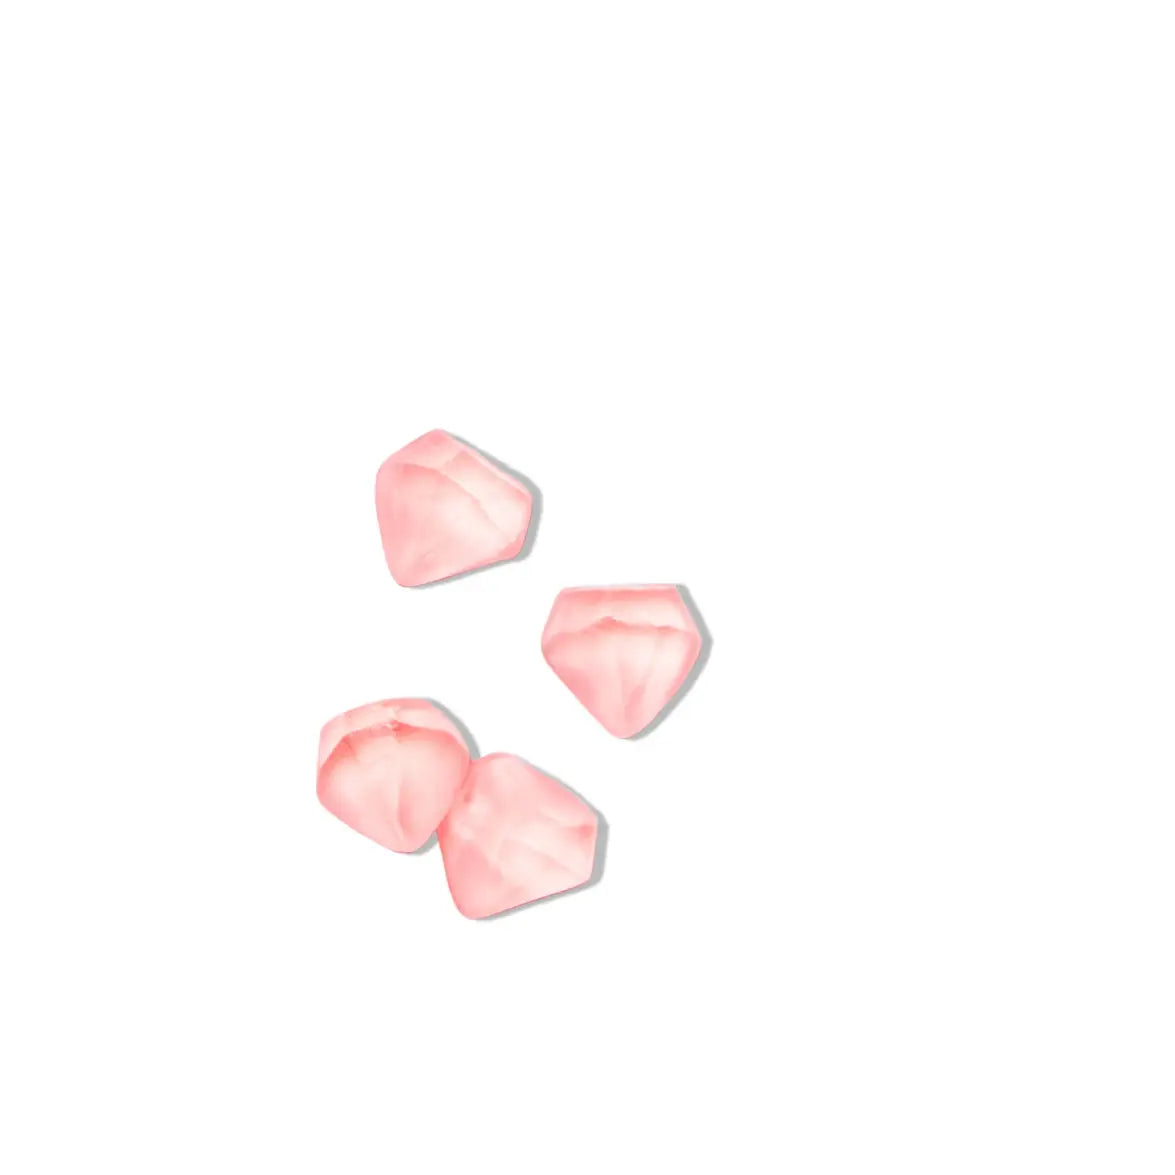 Pink Diamonds Gummies